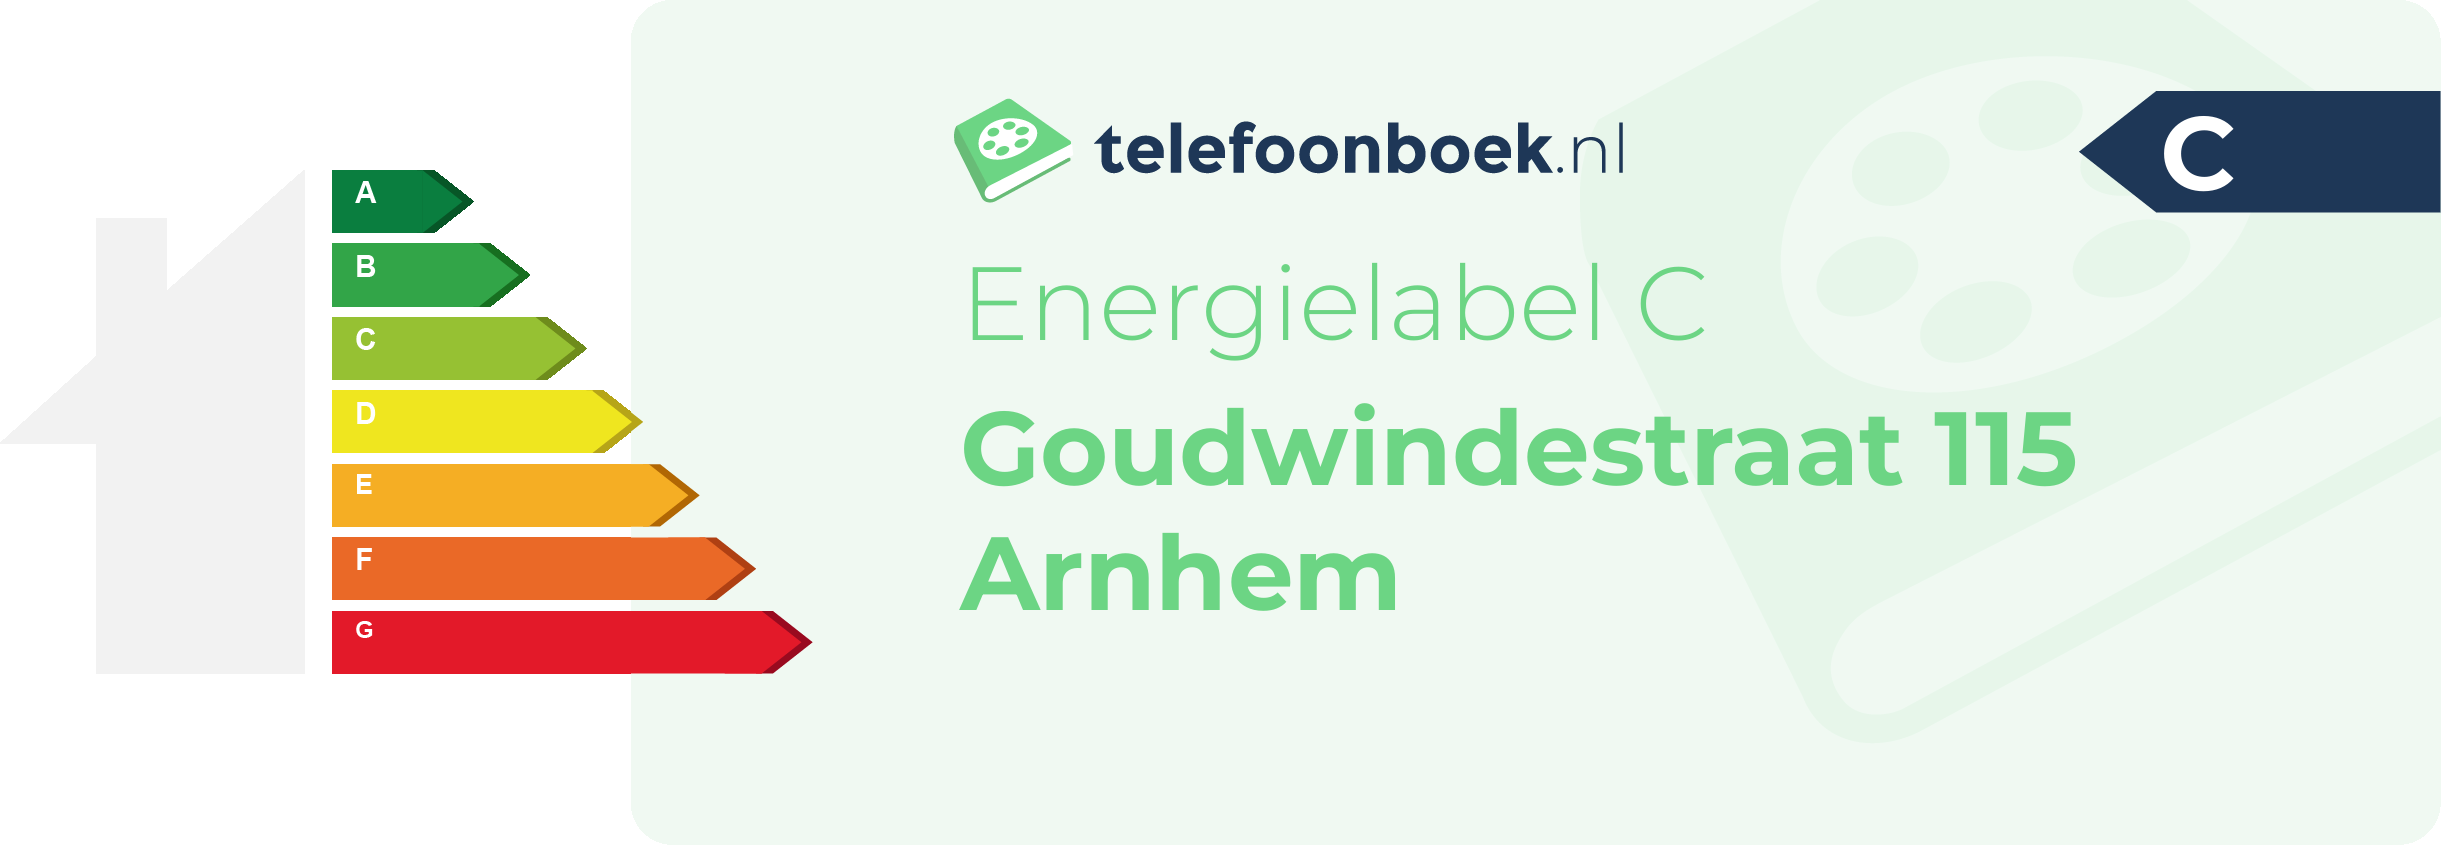 Energielabel Goudwindestraat 115 Arnhem